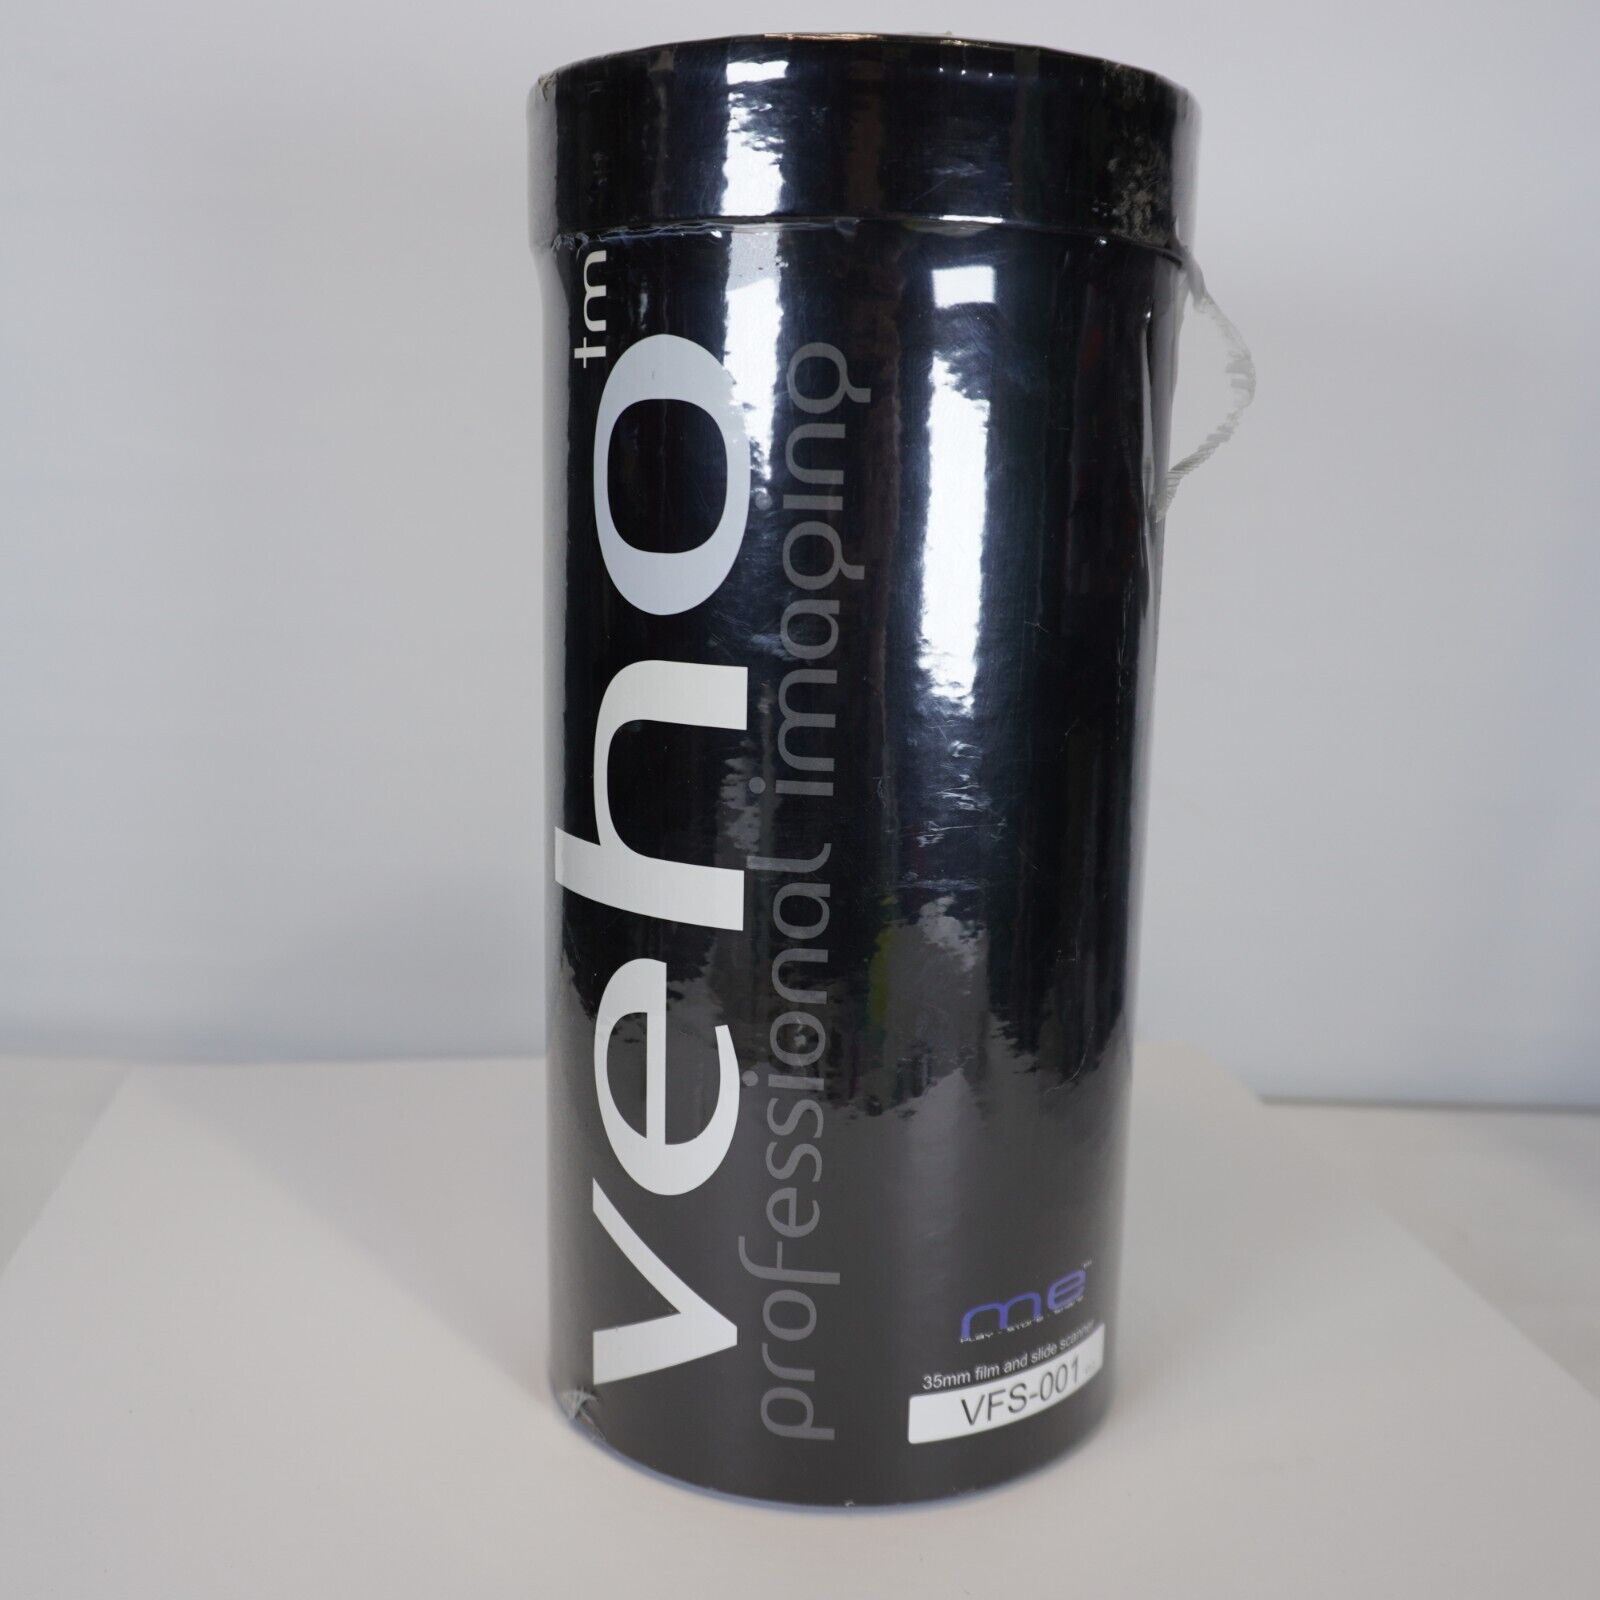 VEHO VFS-001 35mm Film Negative & Slide Scanner, Full Color Scanning NEW, SEALED